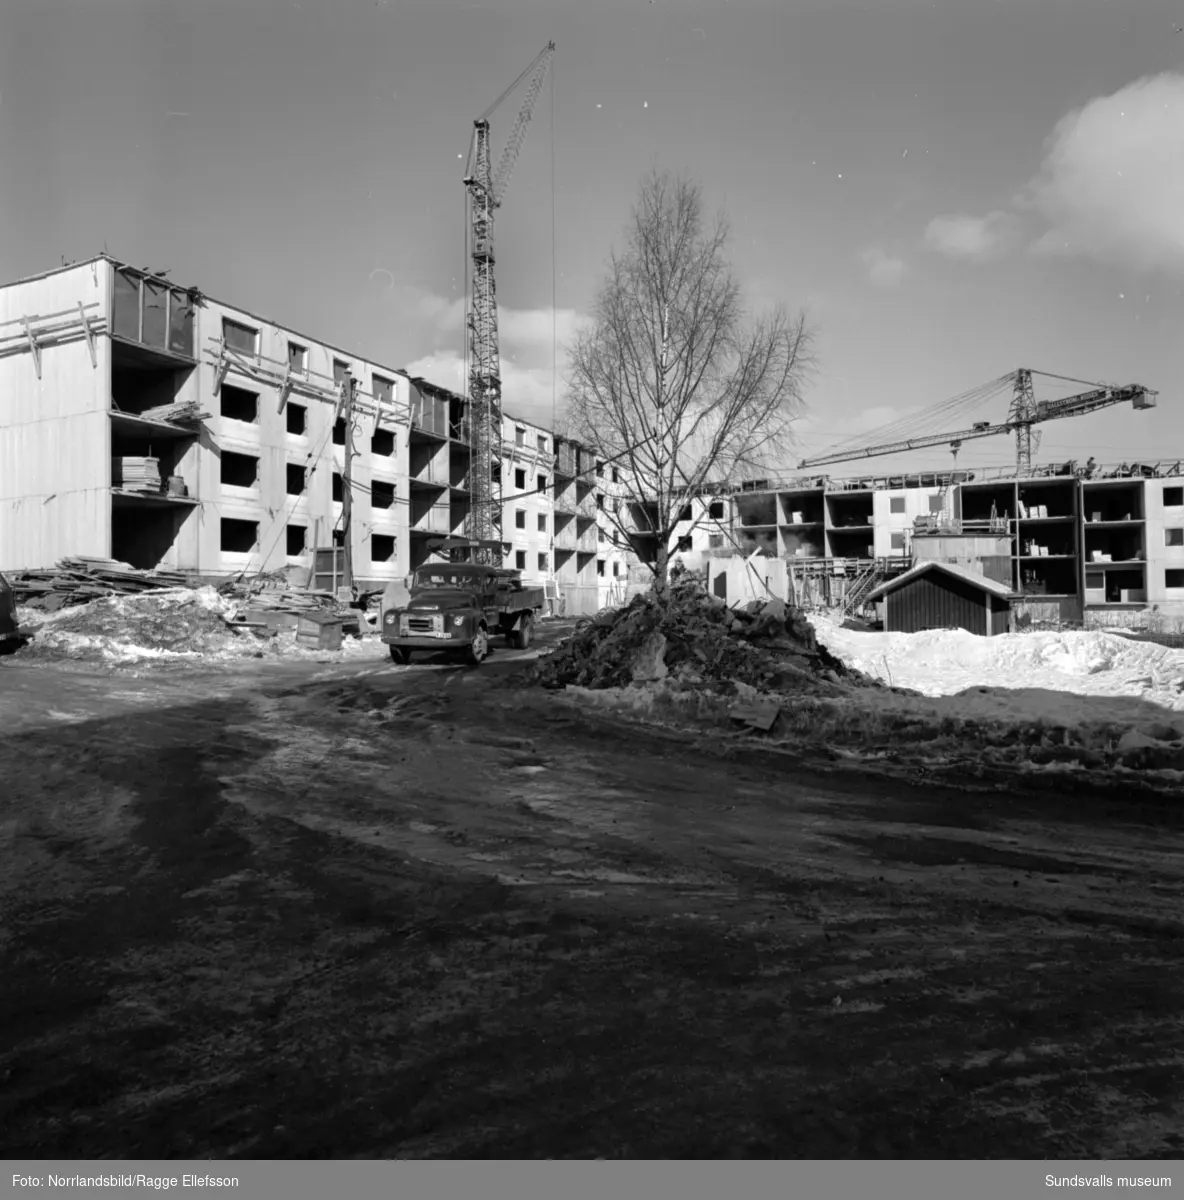 Pågående byggen av flerfamiljshus vid Skogsvägen 8, Köpmangatan 25 och Köpmangatan 20 i centrala Timrå.